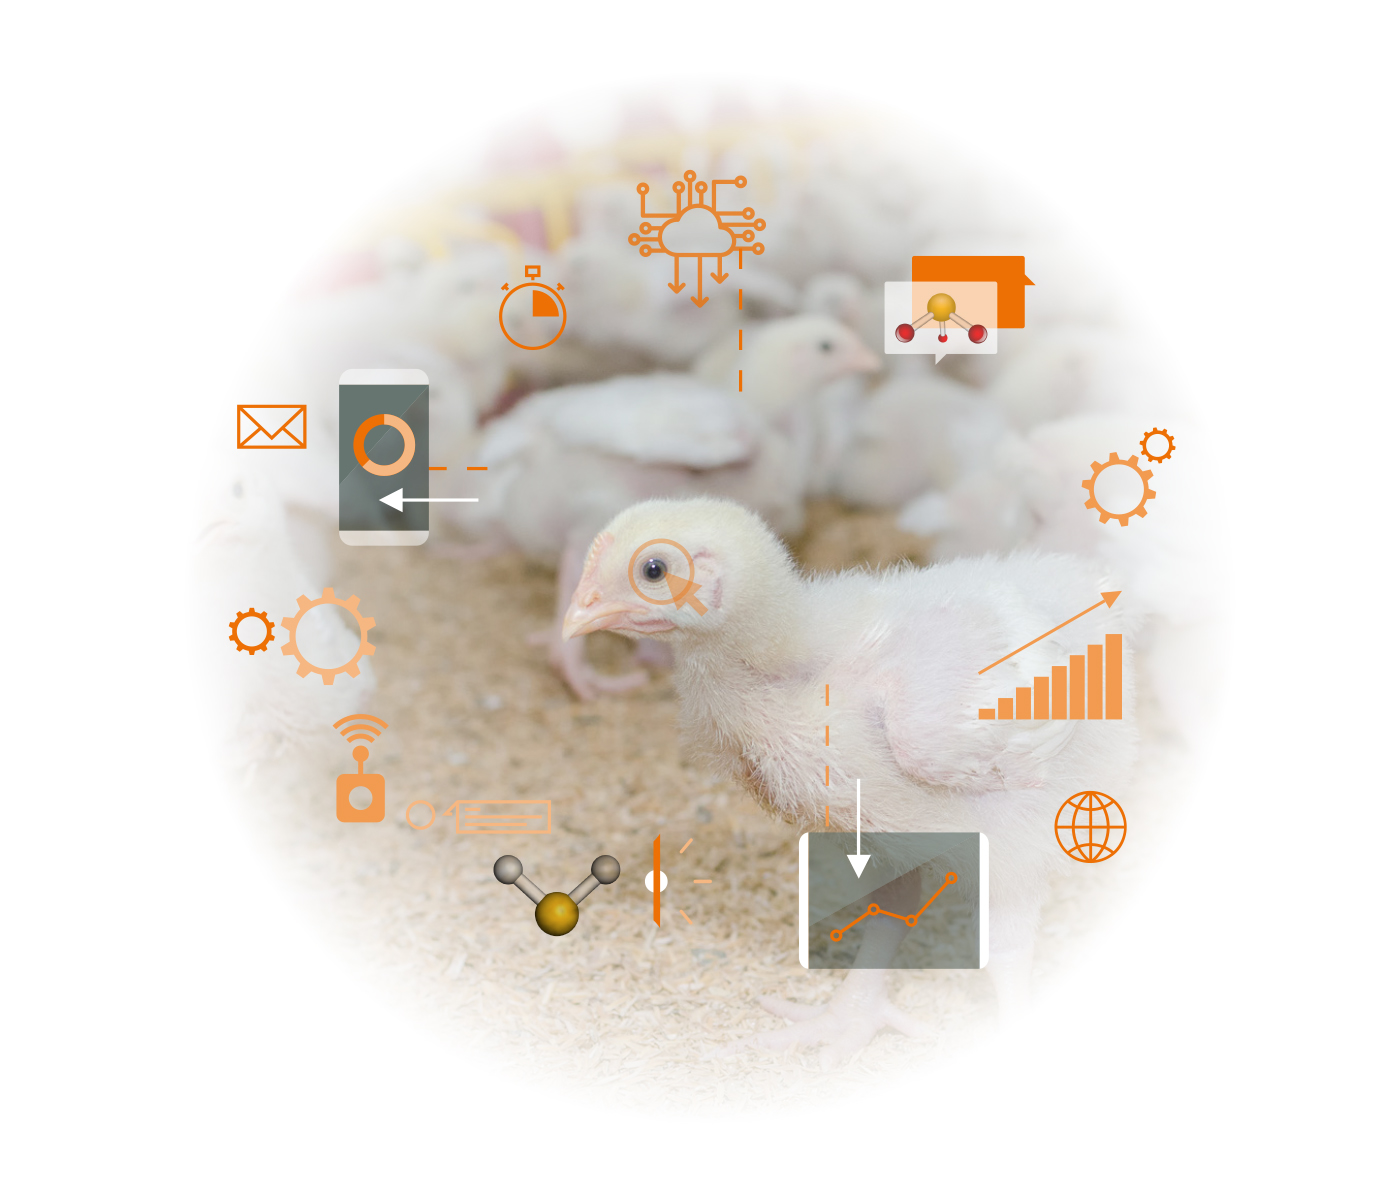 Gases nocivos emitidos por granjas avícolas: Cómo disminuir el impacto sobre rendimiento y salud de las aves